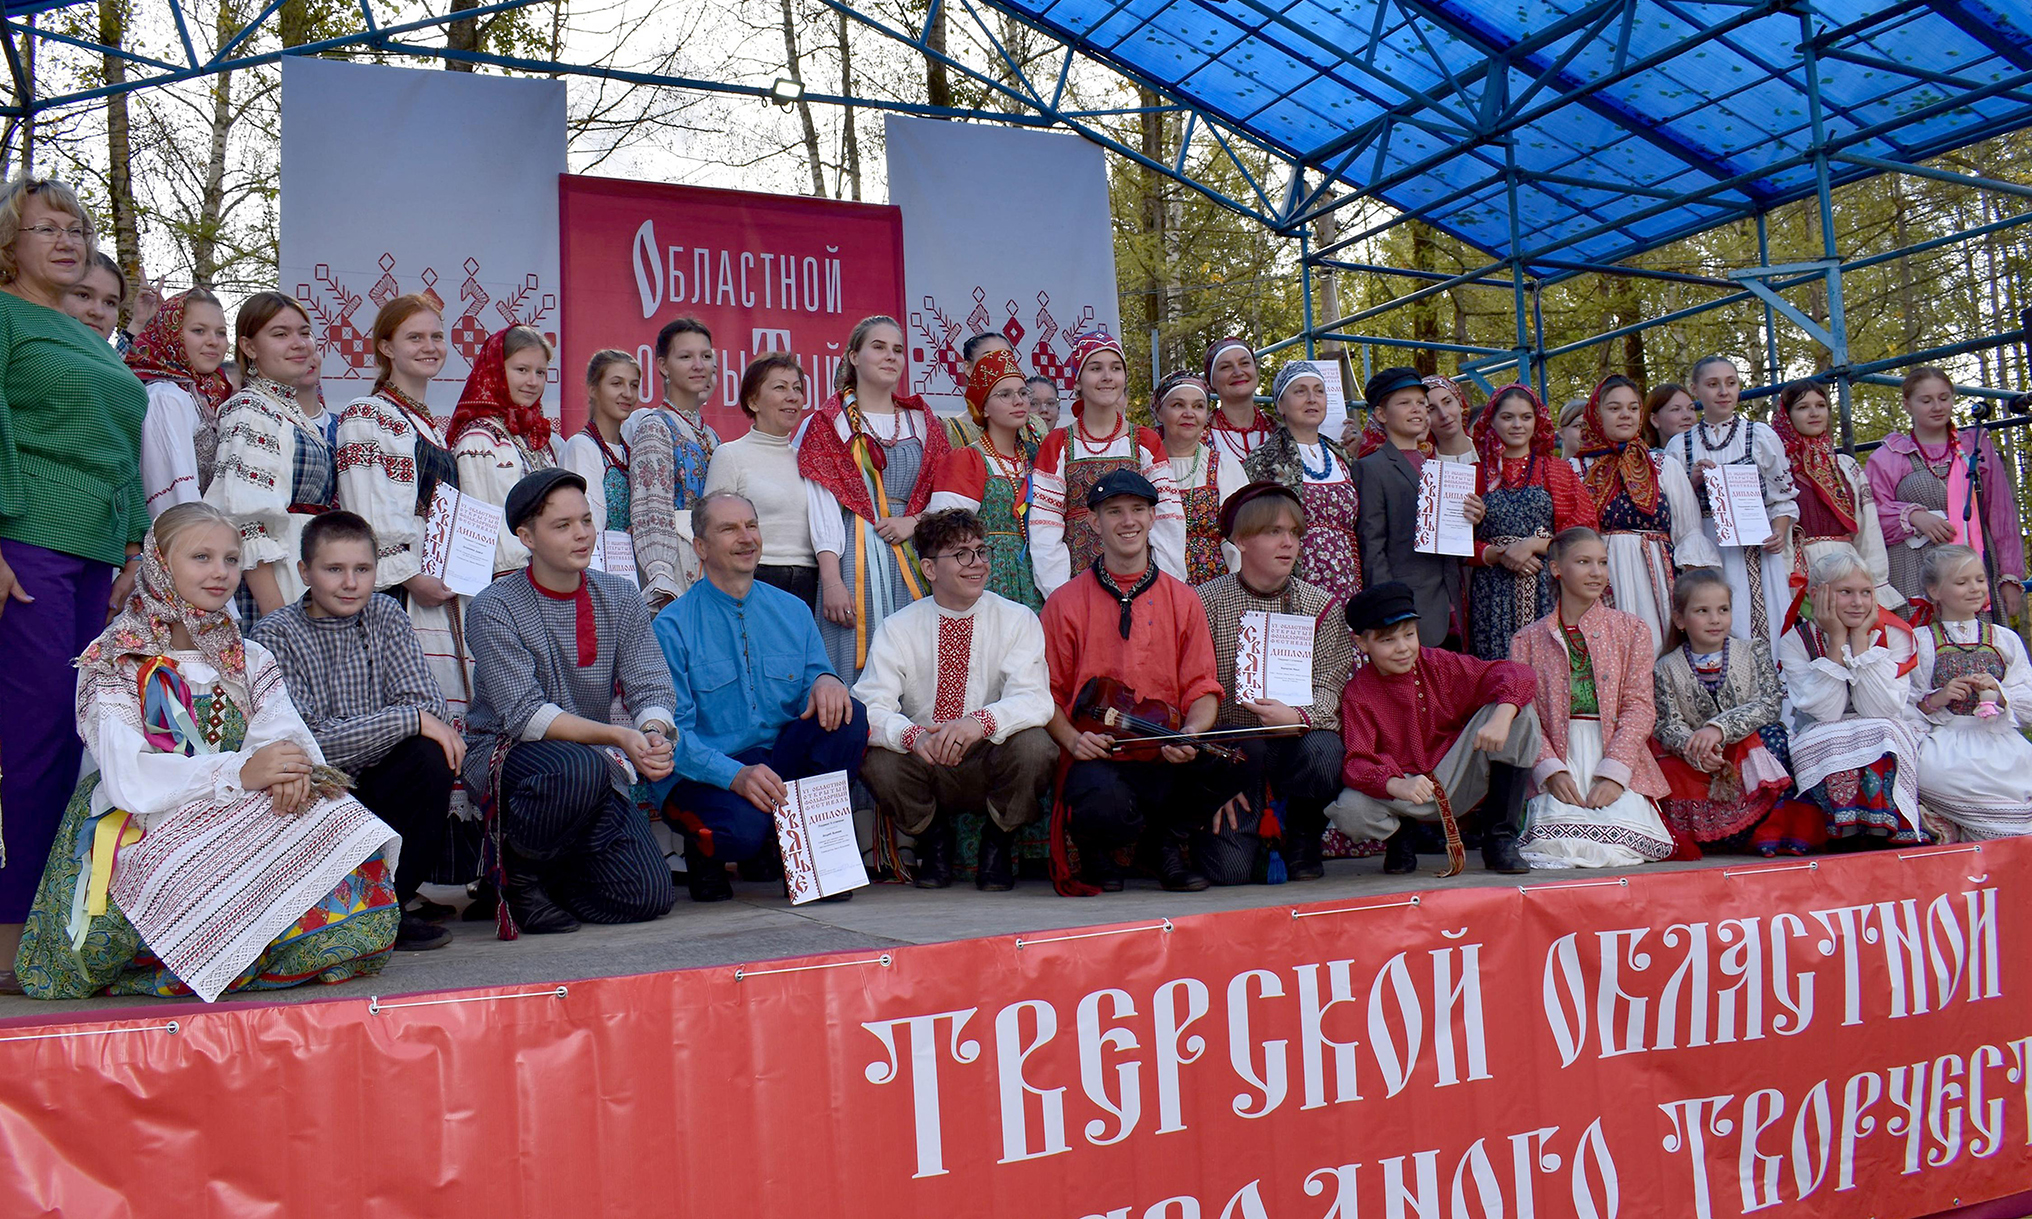 Фольклорный фестиваль «Святьё» прошел в Кимрском районе в шестой раз